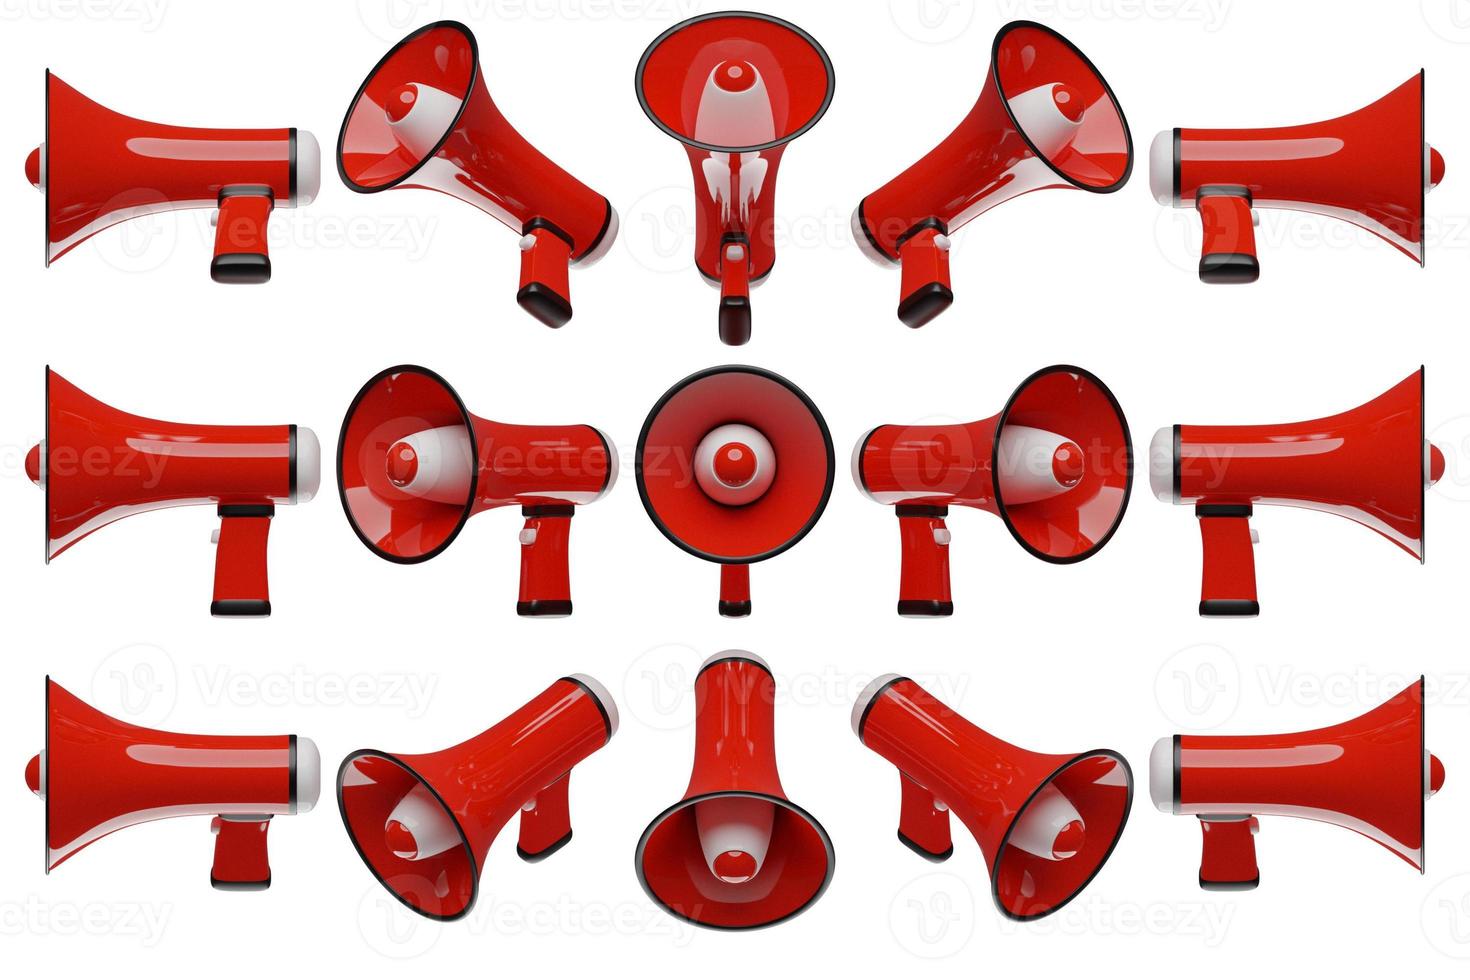 röd tecknad högtalare från alla sidor på en vit monokrom bakgrund. 3D-illustration av en megafon. reklam symbol, marknadsföring koncept. foto